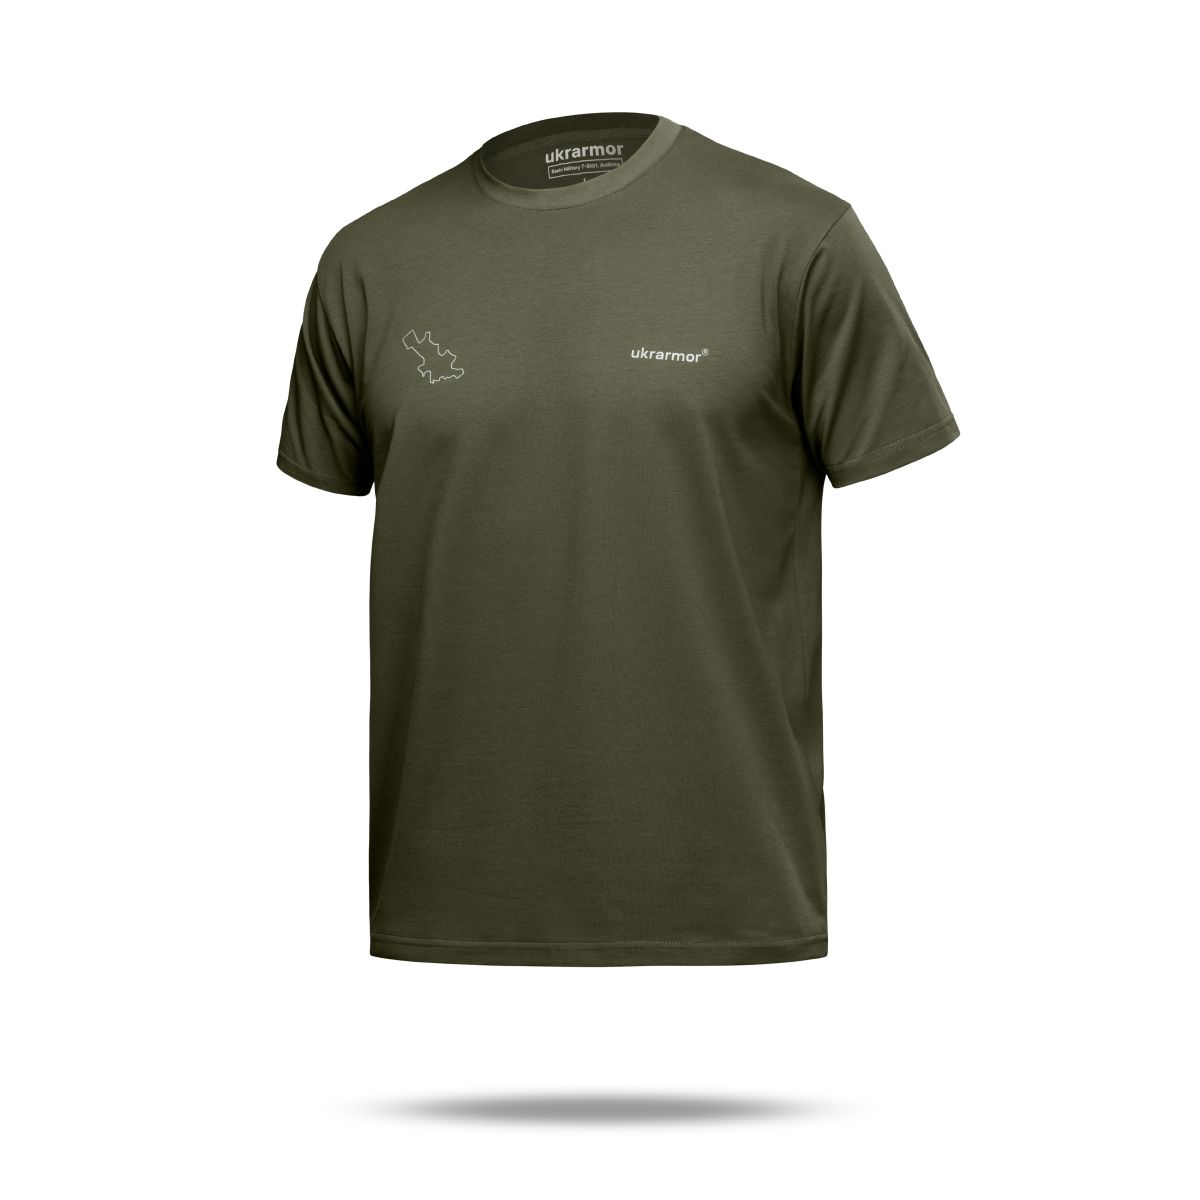 Базовая футболка Military T-Shirt. Авдеевка. Топографическая карта. Хлопок, олива. Размер S